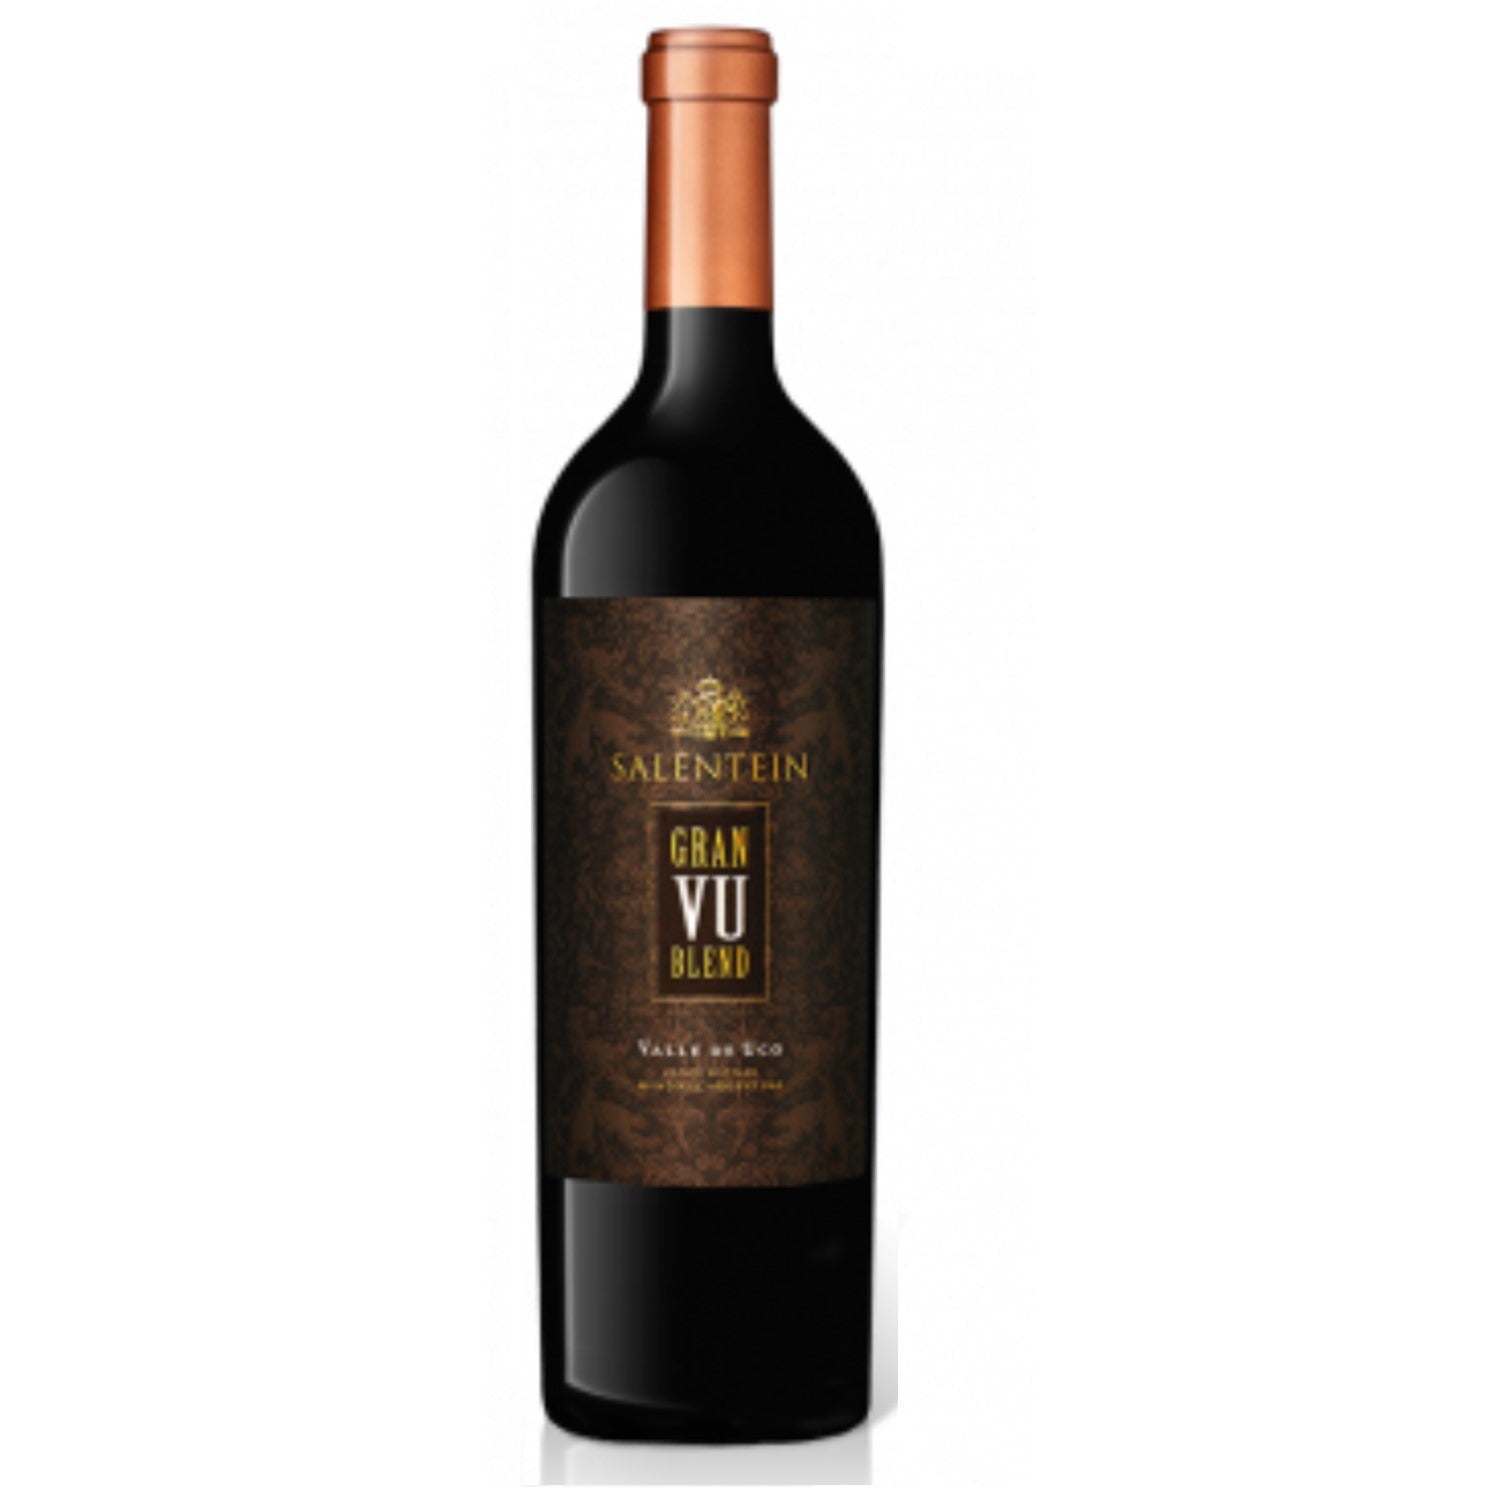 Bodegas Salentein Gran Vu Blend Rotwein Wein trocken Argentinien (3 x 0.75l) - Versanel -